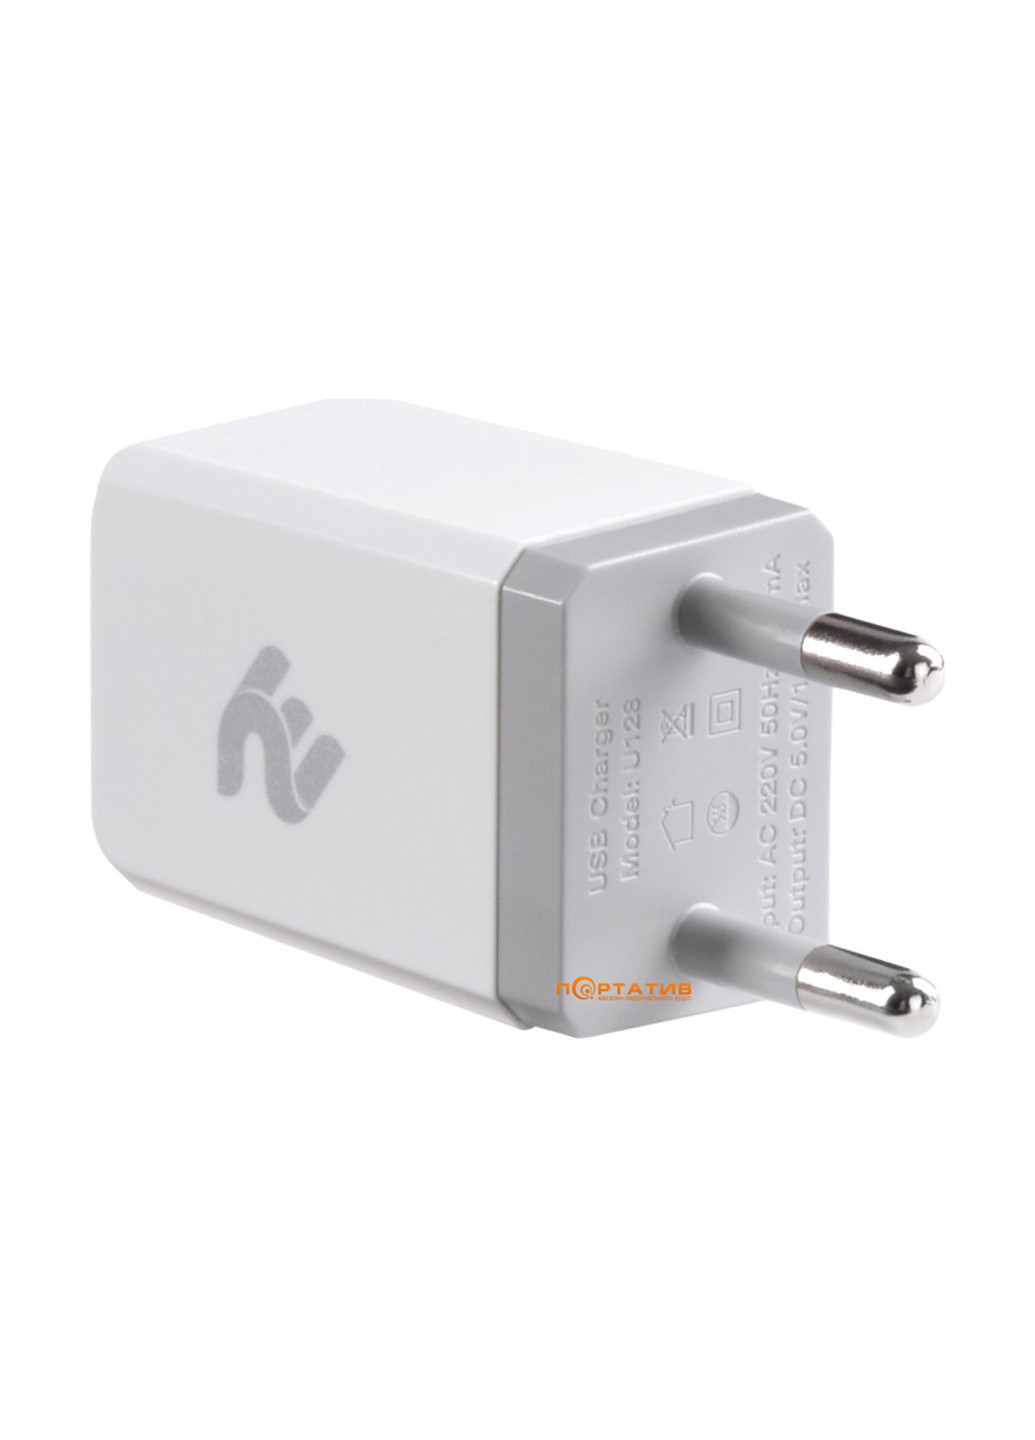 Сетевое зарядное устройство USB Wall Charger USB:DC5V/1A, white (-WC1USB1A-W) 2E USB Wall Charger USB:DC5V/1A, white (2E-WC1USB1A-W) белое